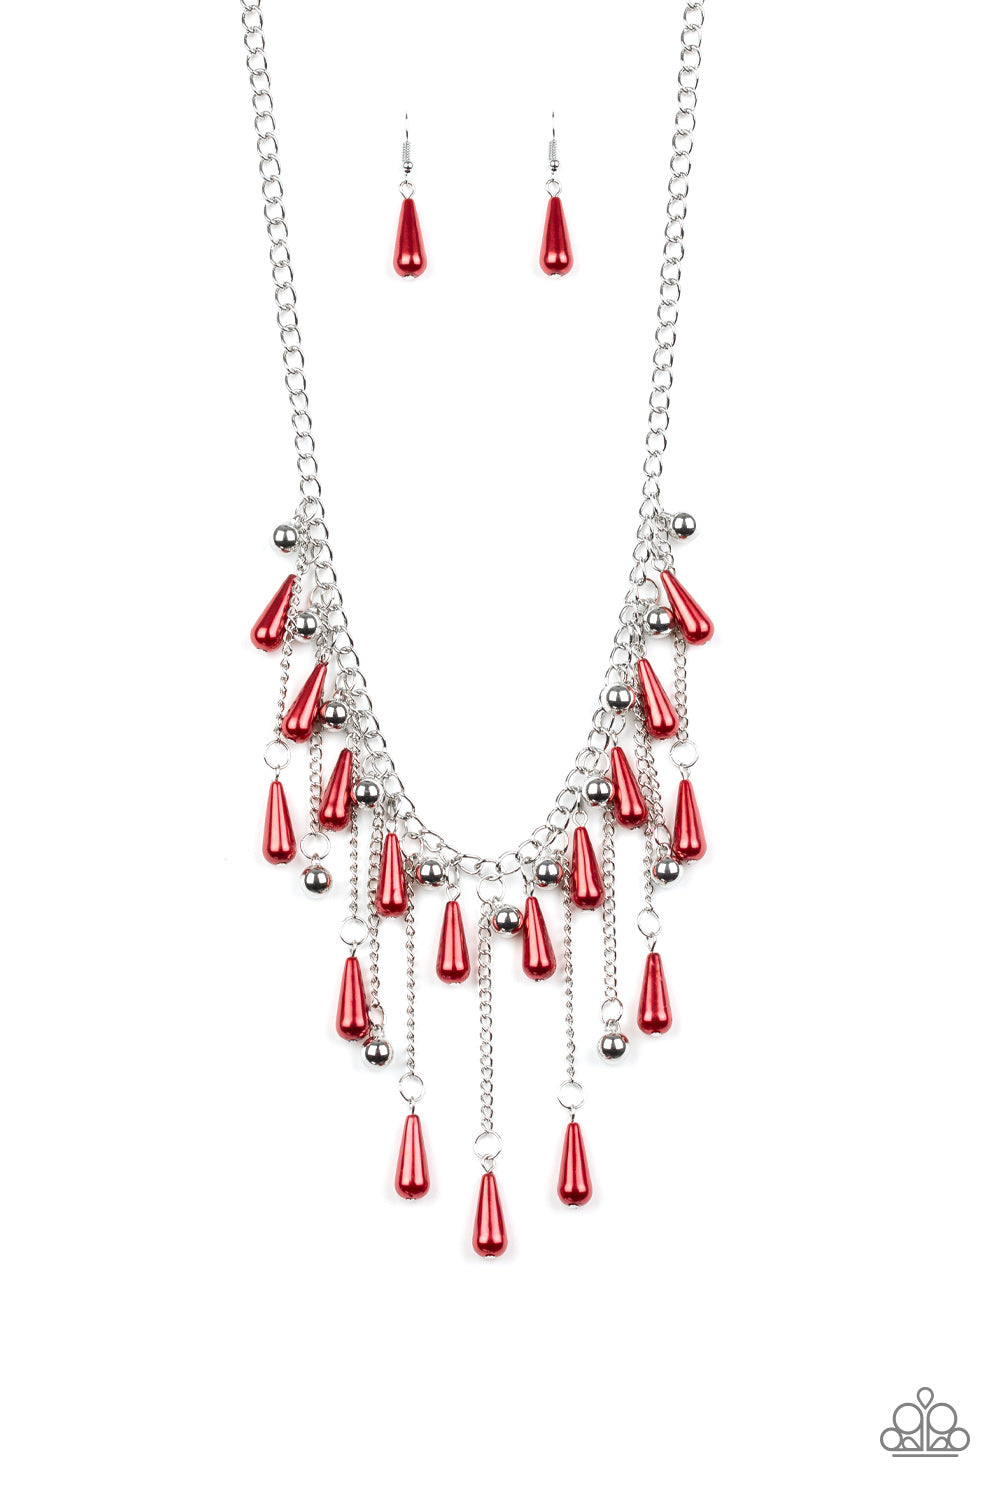 Fleur de Fringe Red Paparazzi Necklace Cashmere Pink Jewels - Cashmere Pink Jewels & Accessories, Cashmere Pink Jewels & Accessories - Paparazzi